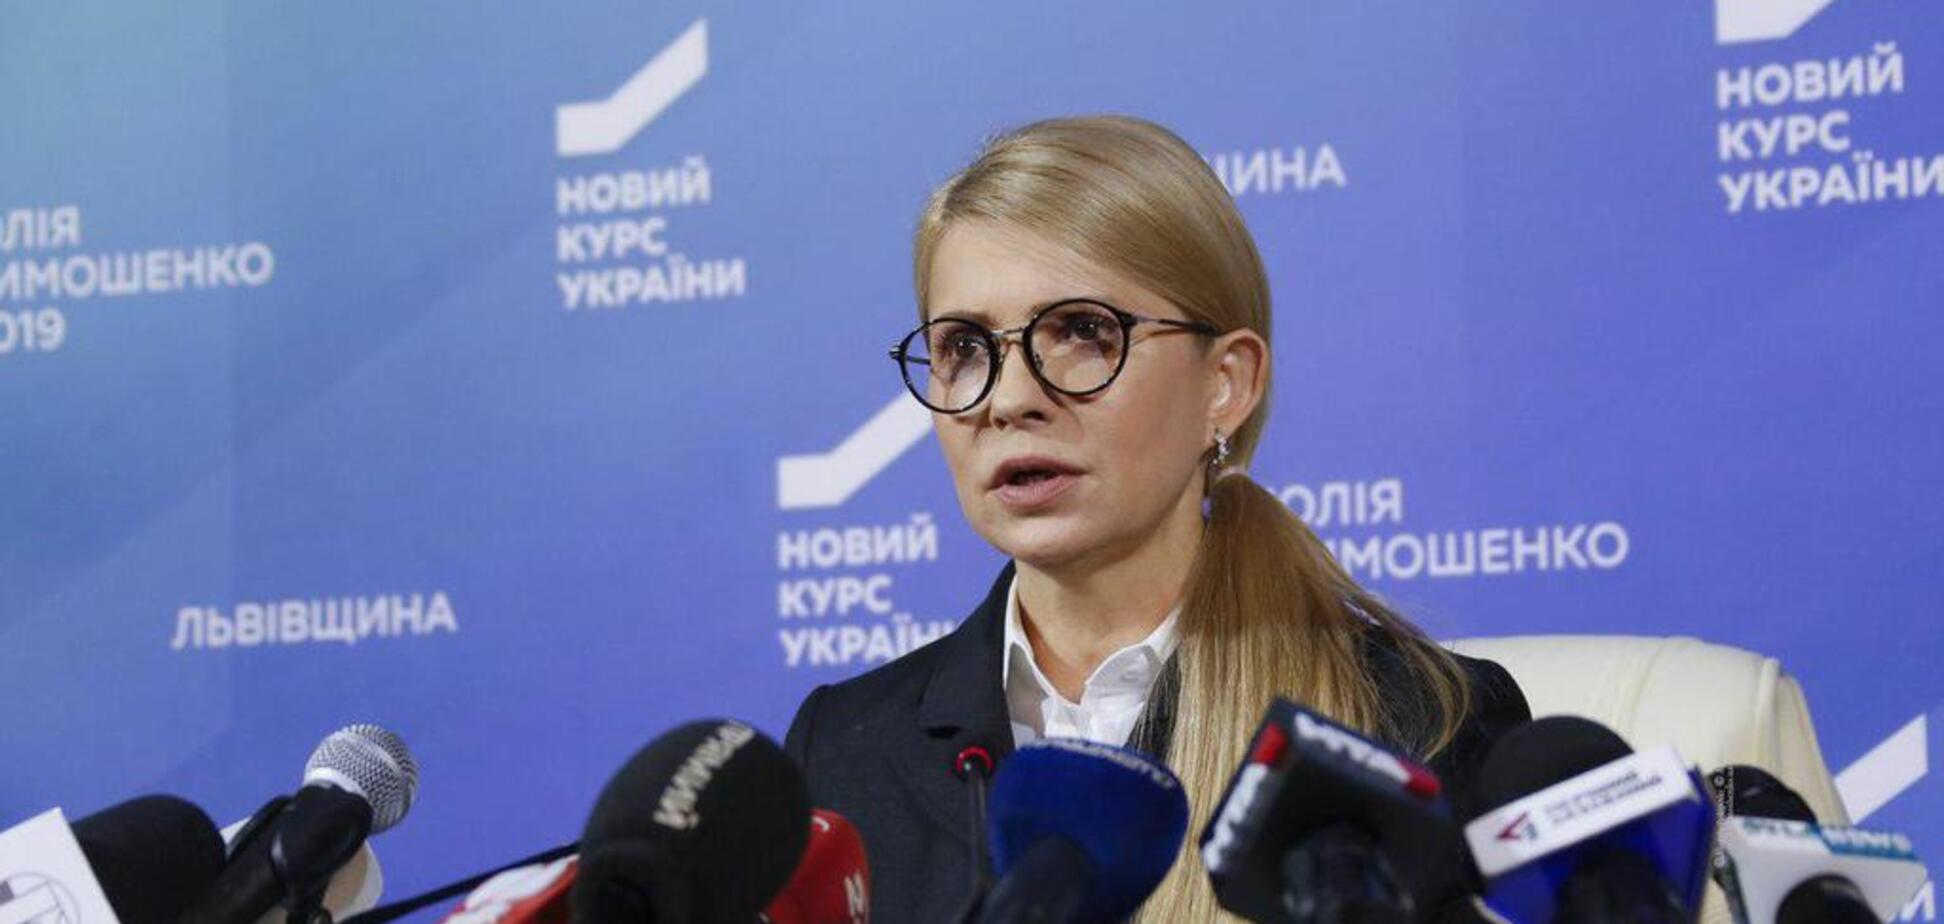 Хербст: Тимошенко нельзя назвать другом Кремля